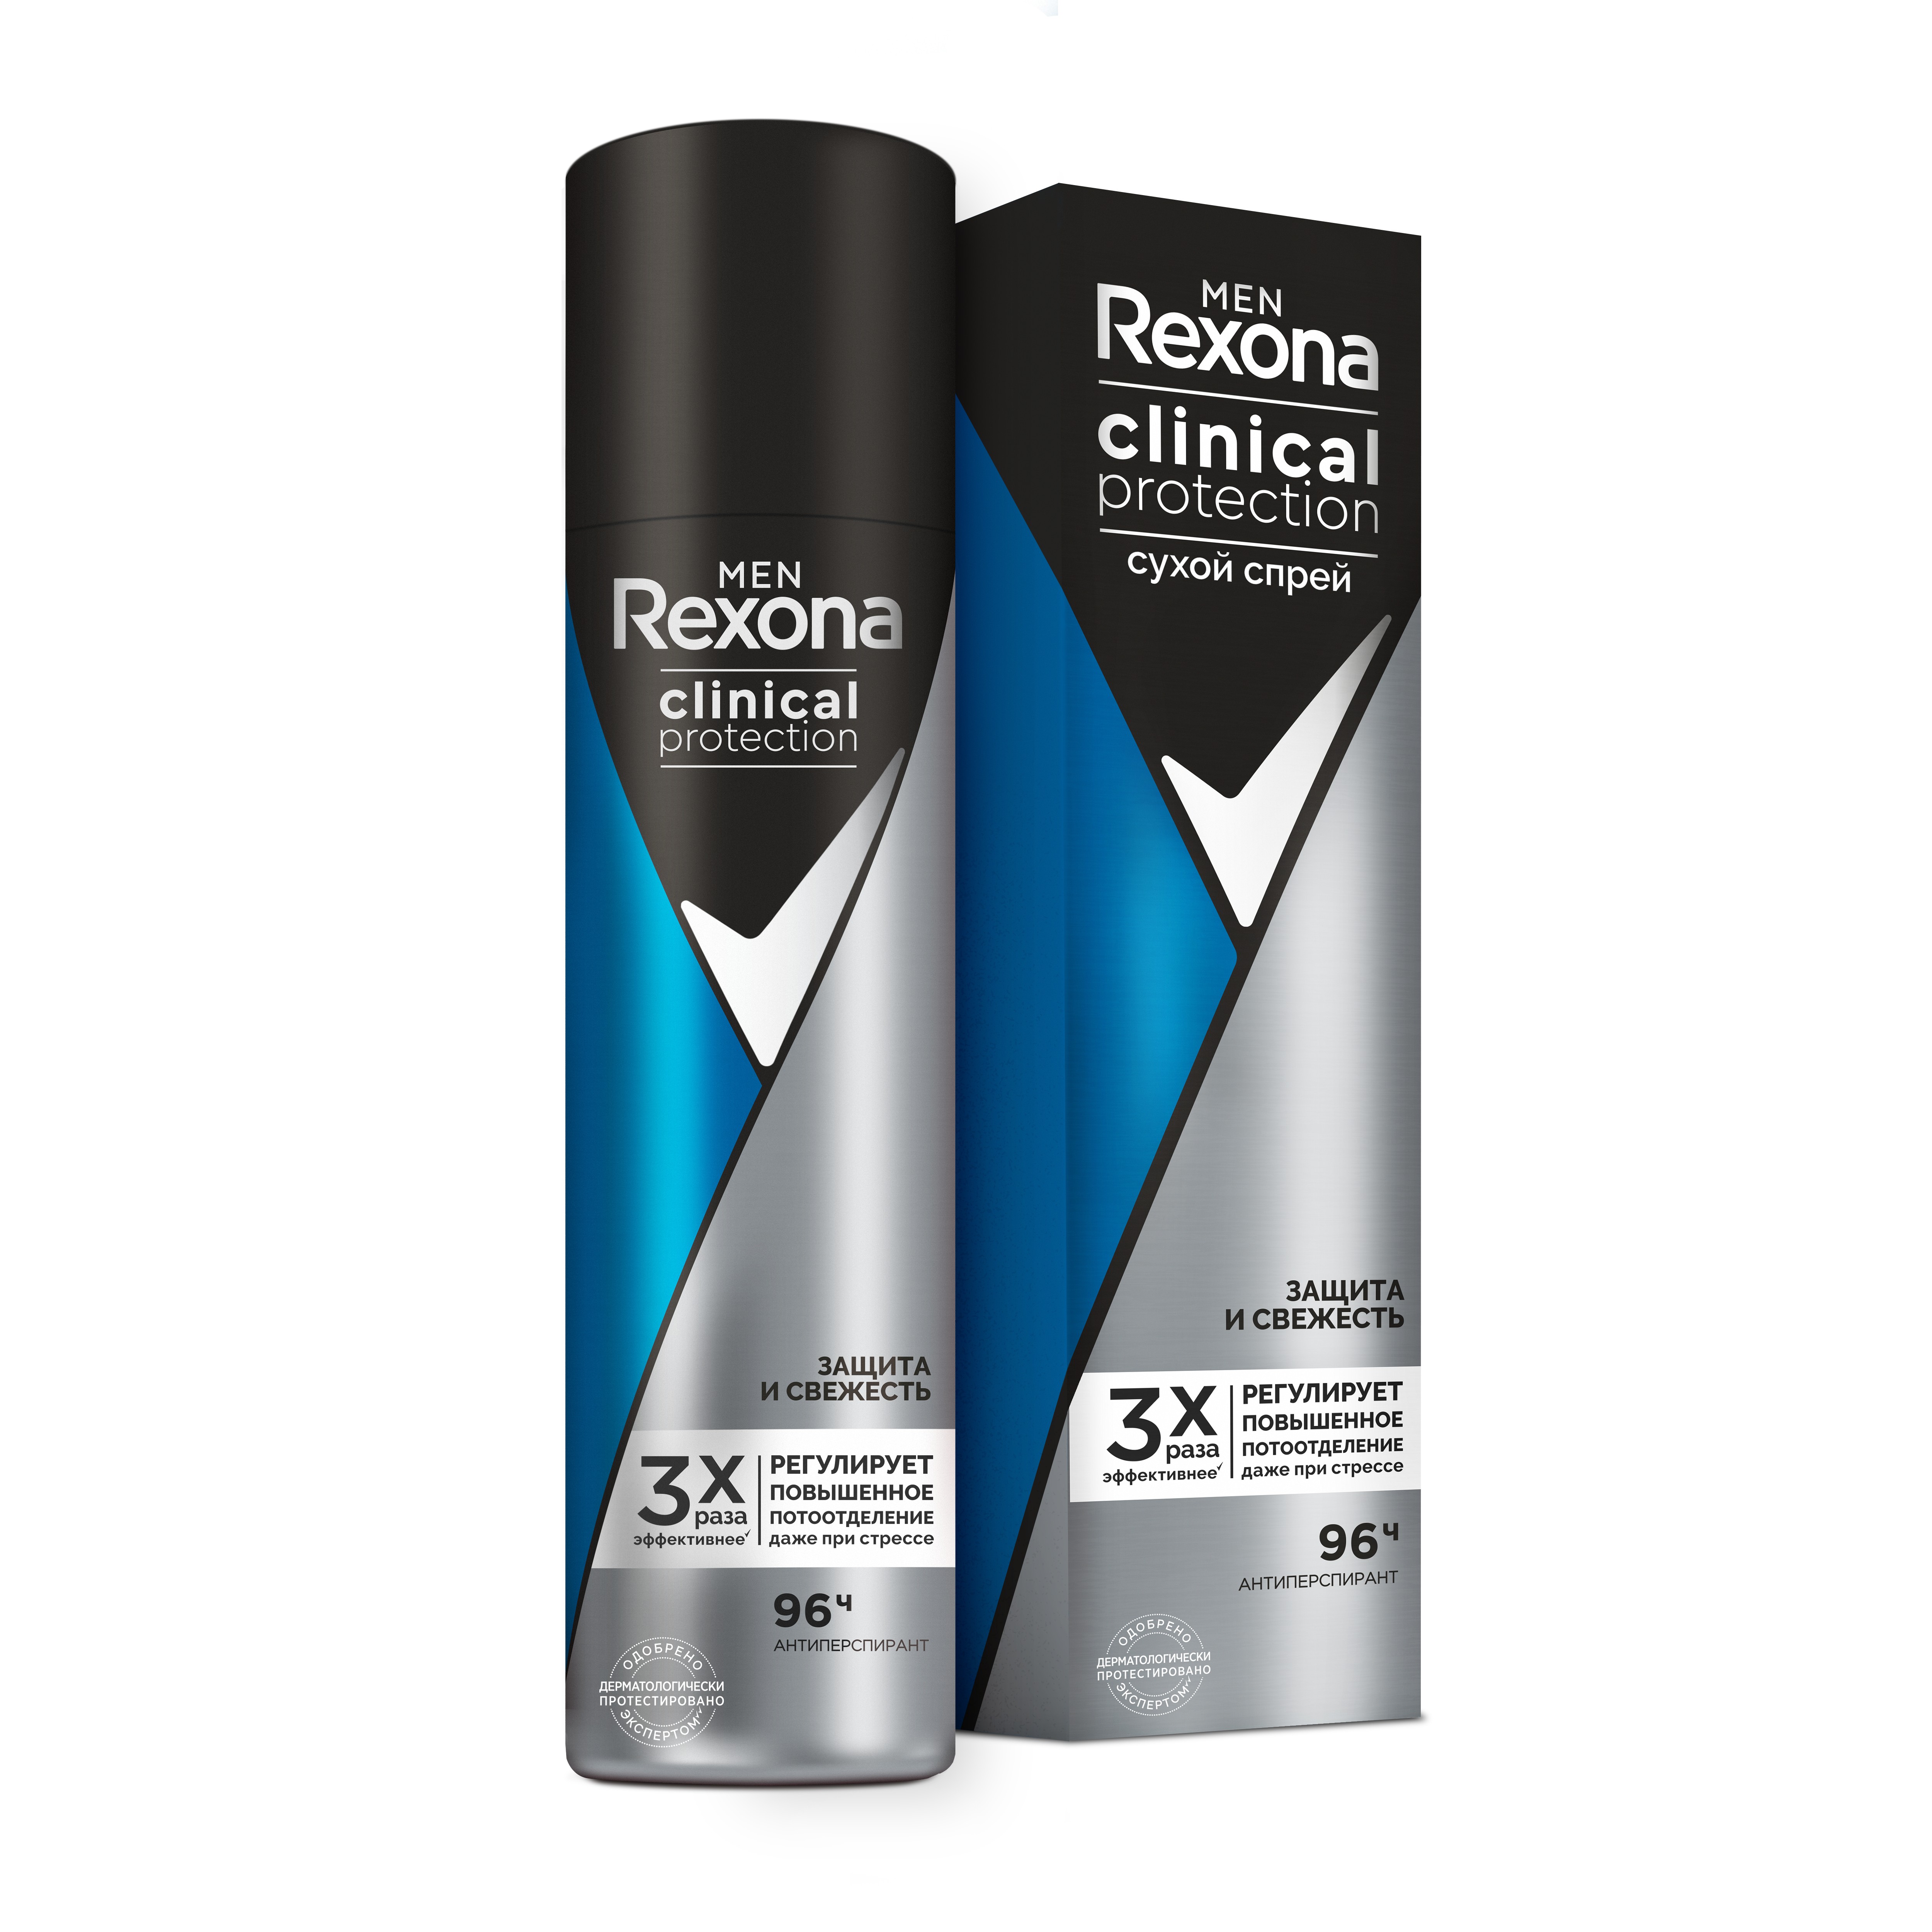 Купить Антиперспирант-дезодорант Rexona Clinical Protection Защита и Свежесть 150мл